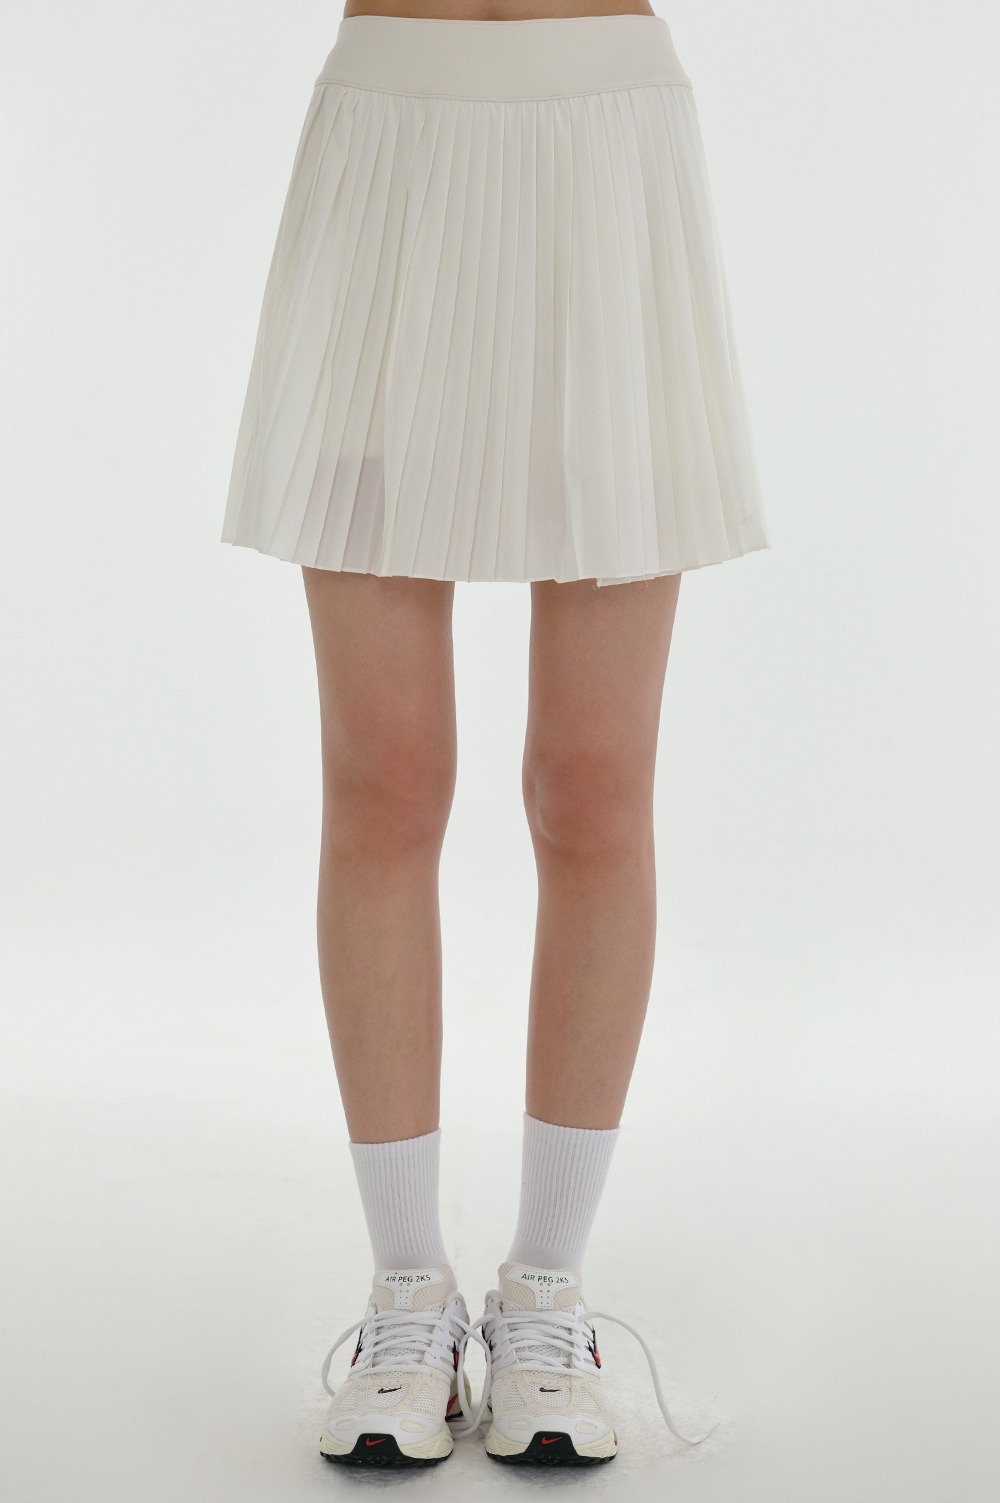 clove - [24SS clove] Wrap Tennis Skirt (Cream)